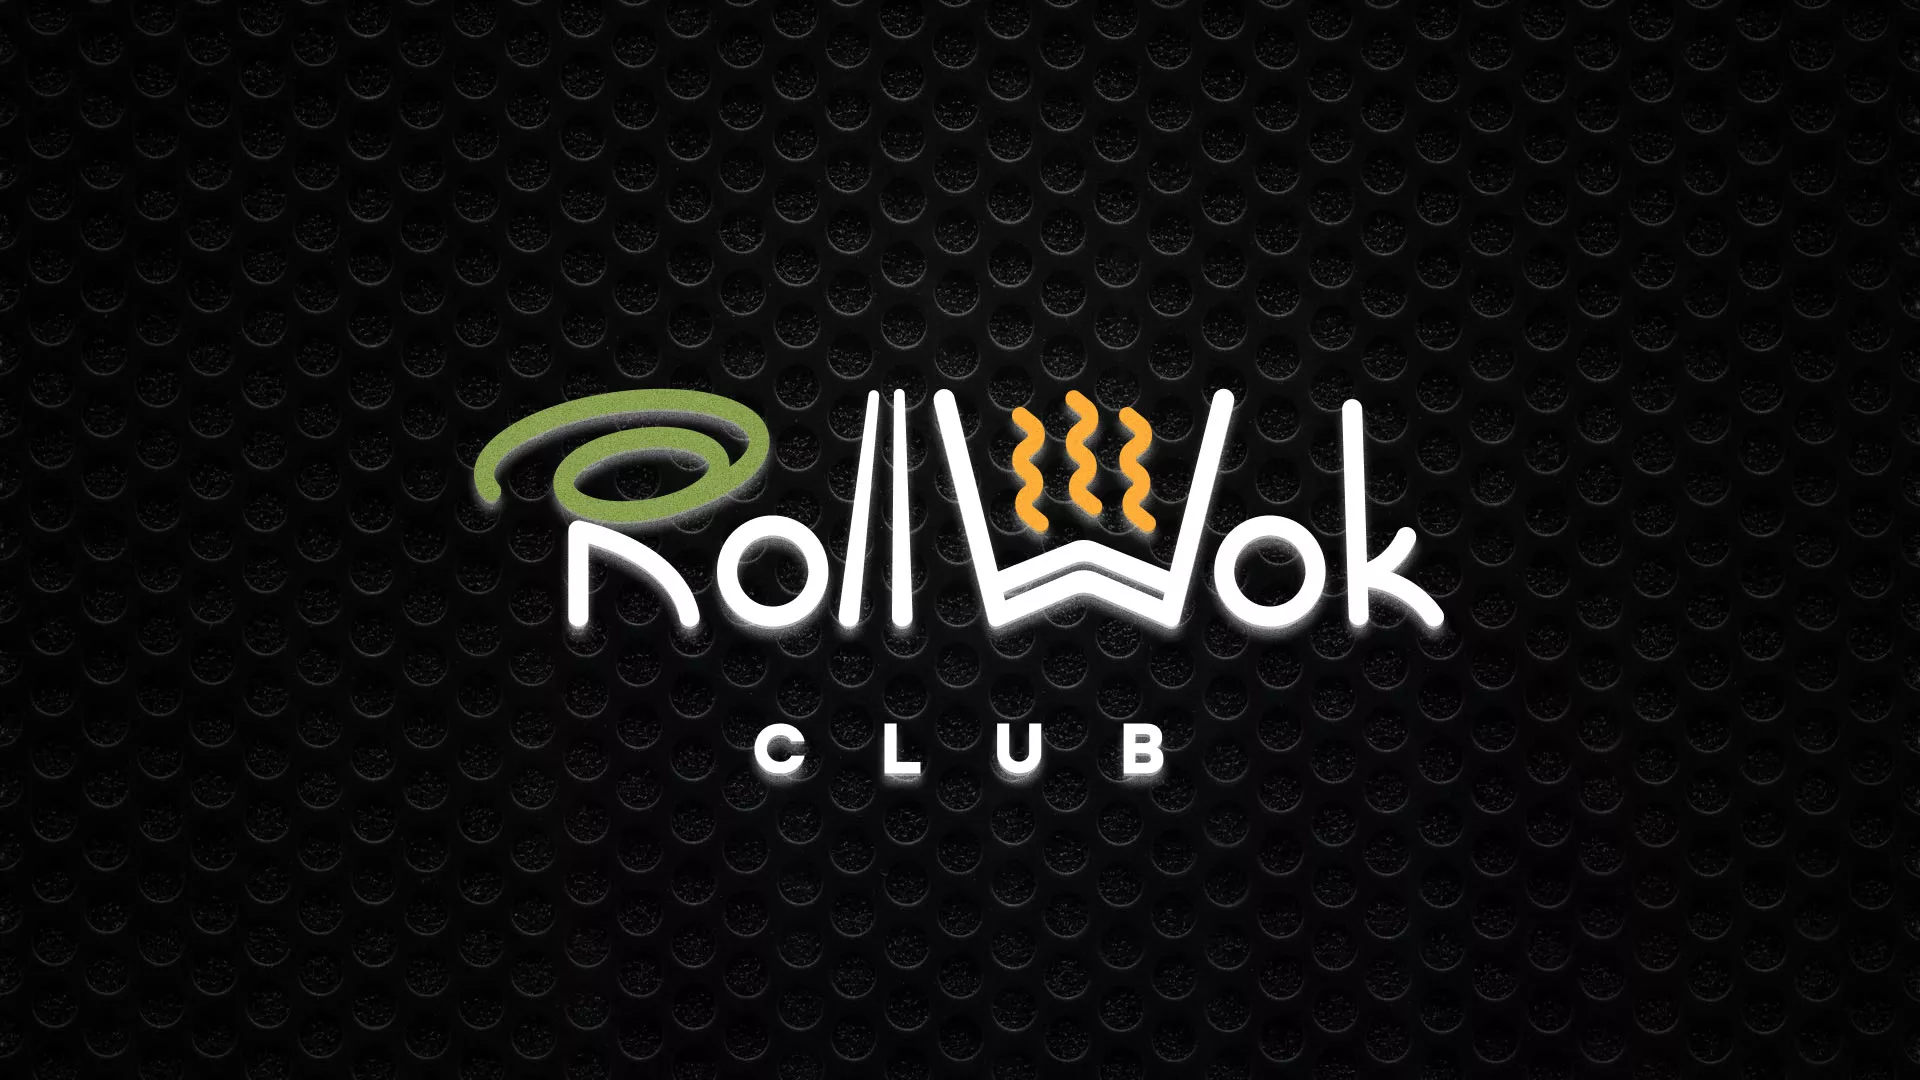 Брендирование торговых точек суши-бара «Roll Wok Club» в Ясном